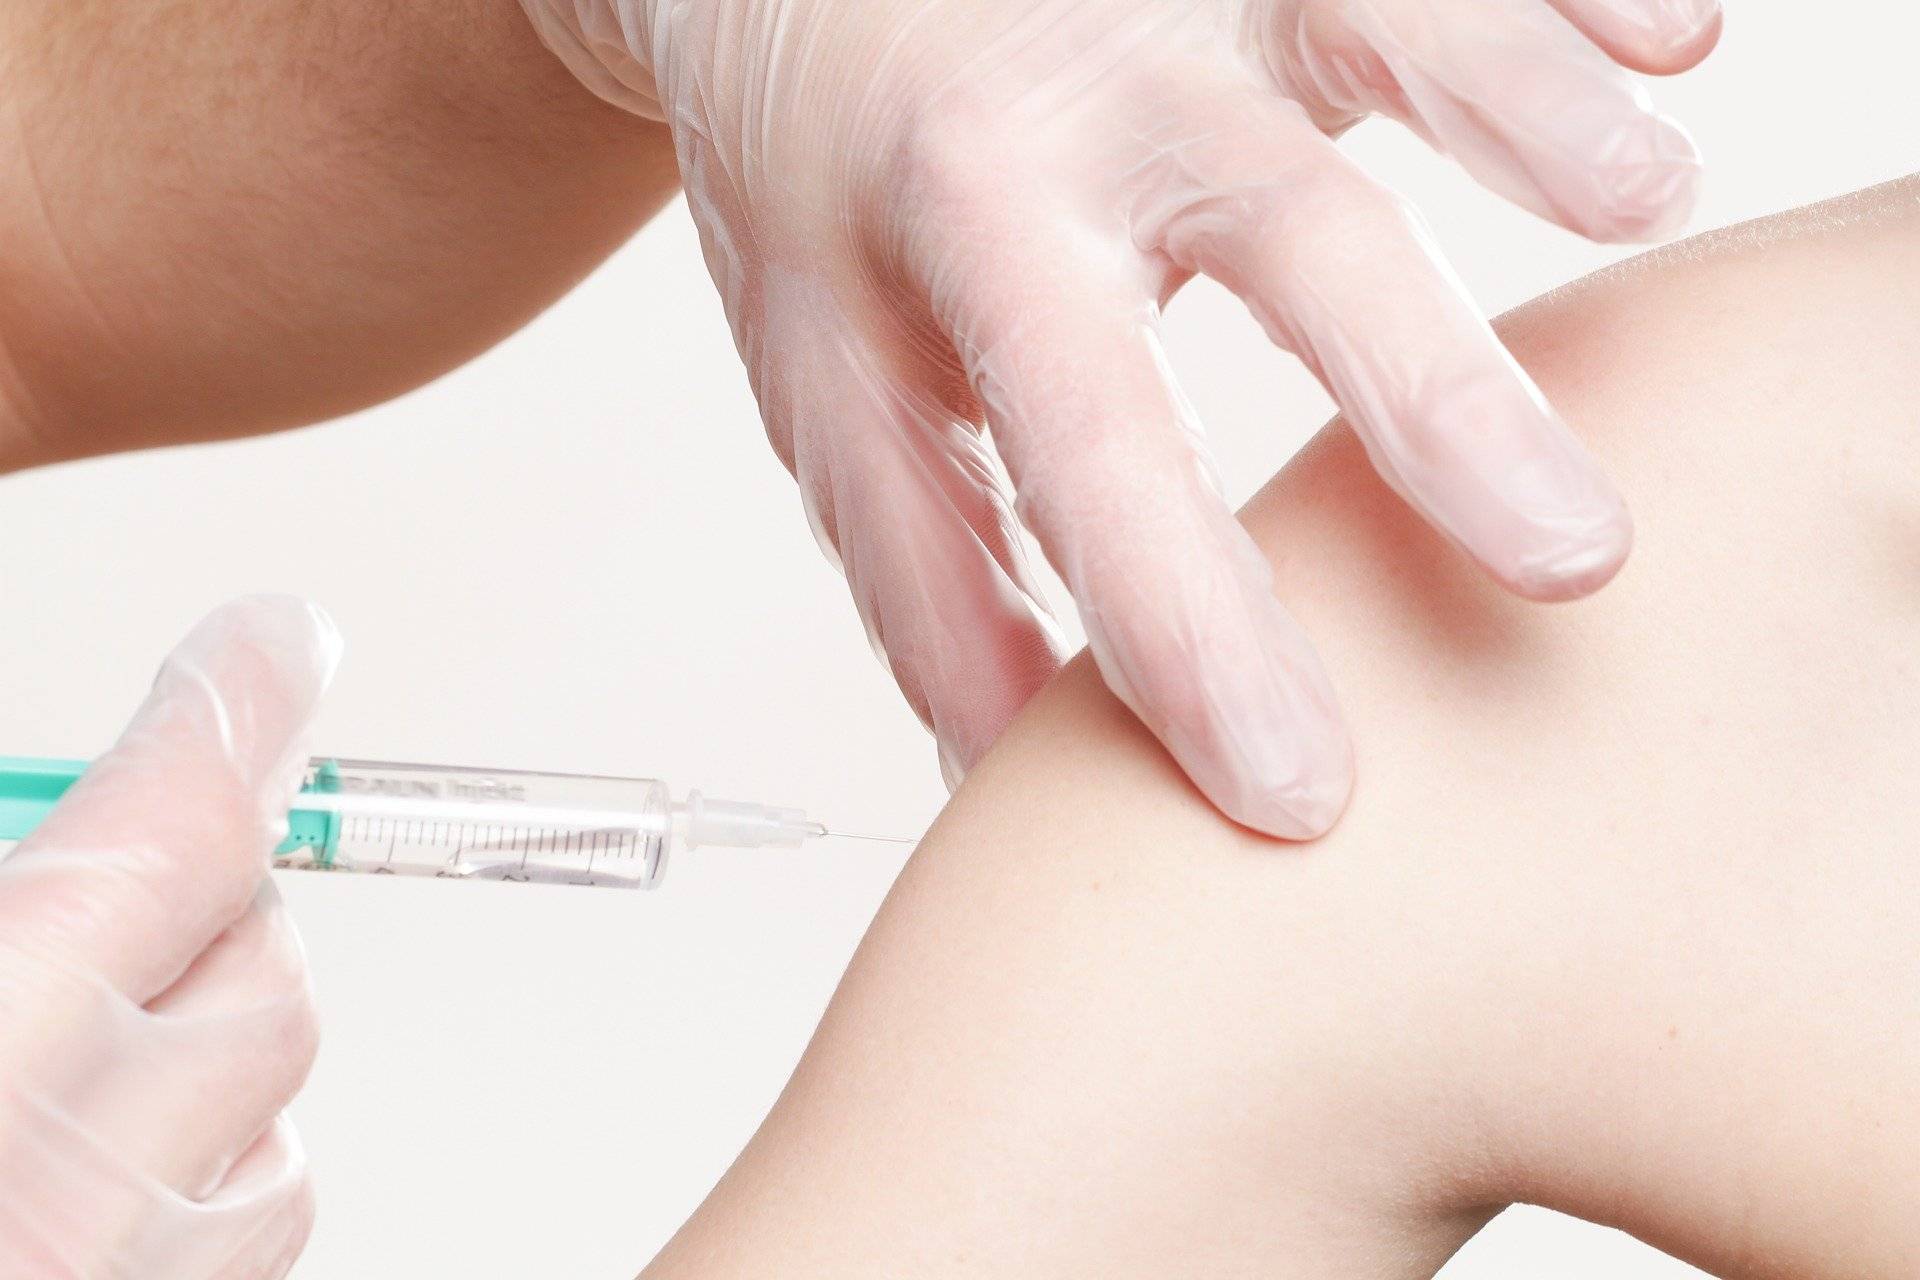 Geimpft wird in allen kreisangehörigen Städten: Impfung von Lehr- und Kitapersonal läuft an